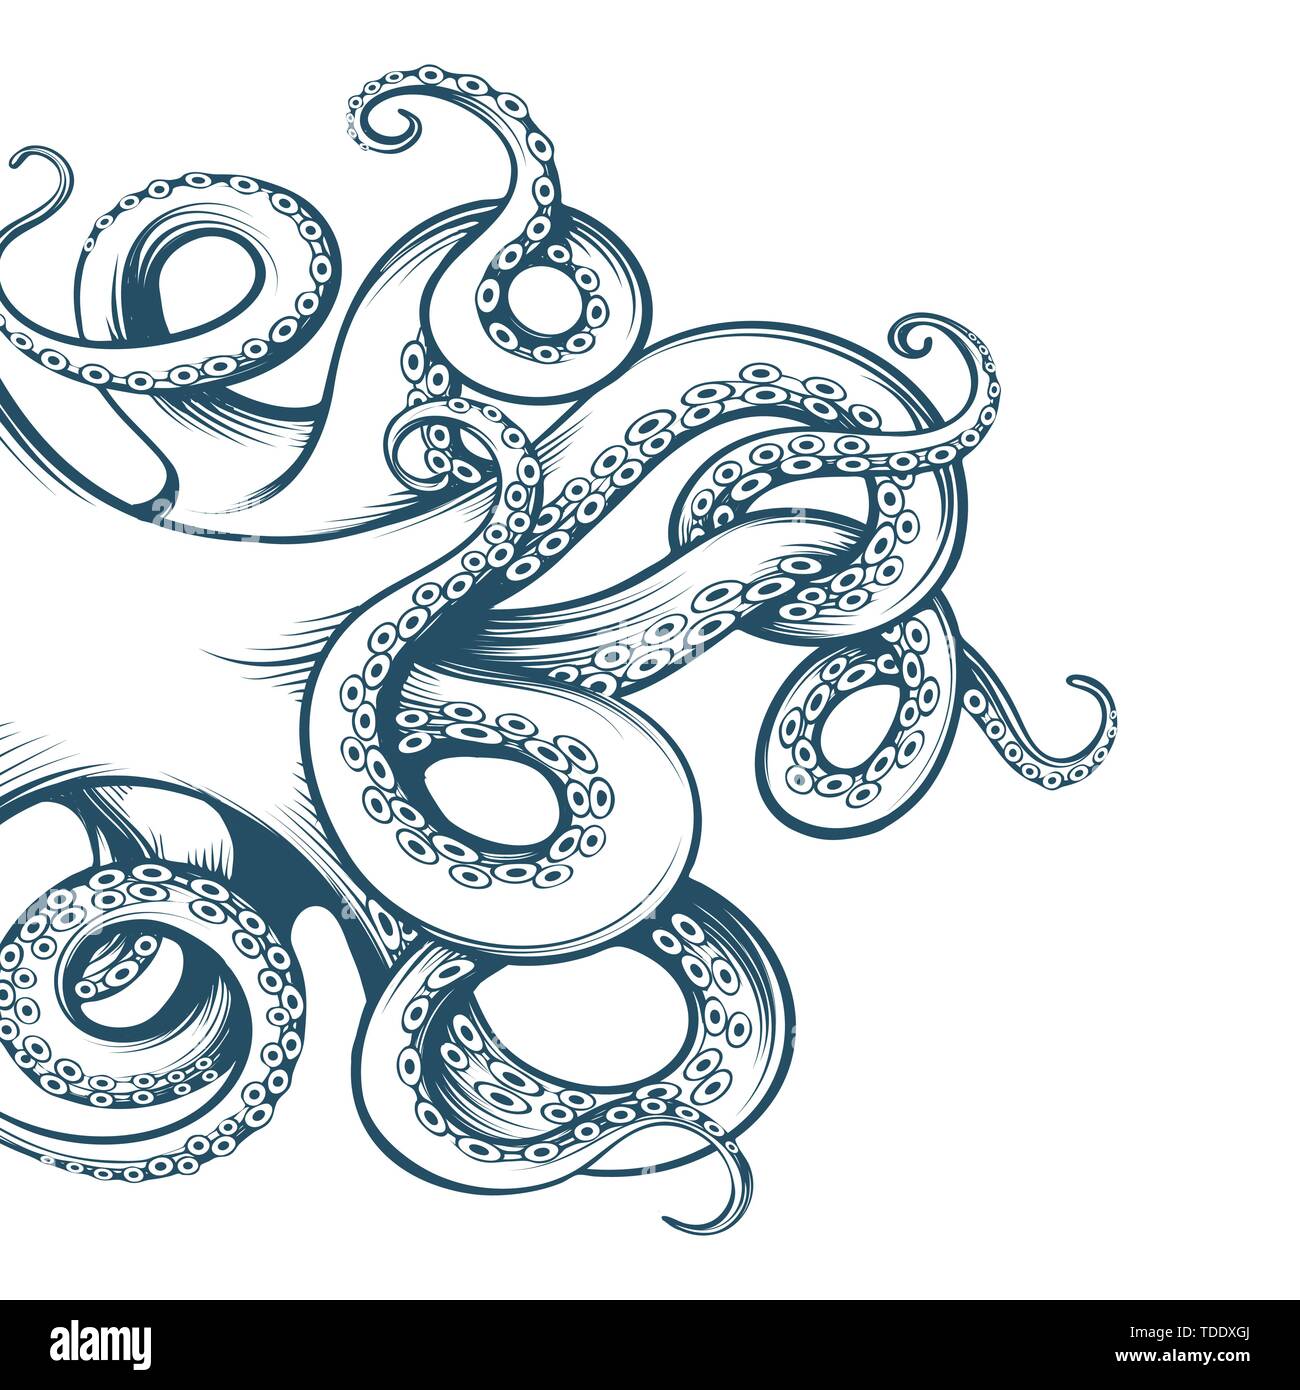 Disegnata a mano di tentacoli di polpo disegnati in stile di incisione isolati su sfondo bianco. Illustrazione Vettoriale Illustrazione Vettoriale